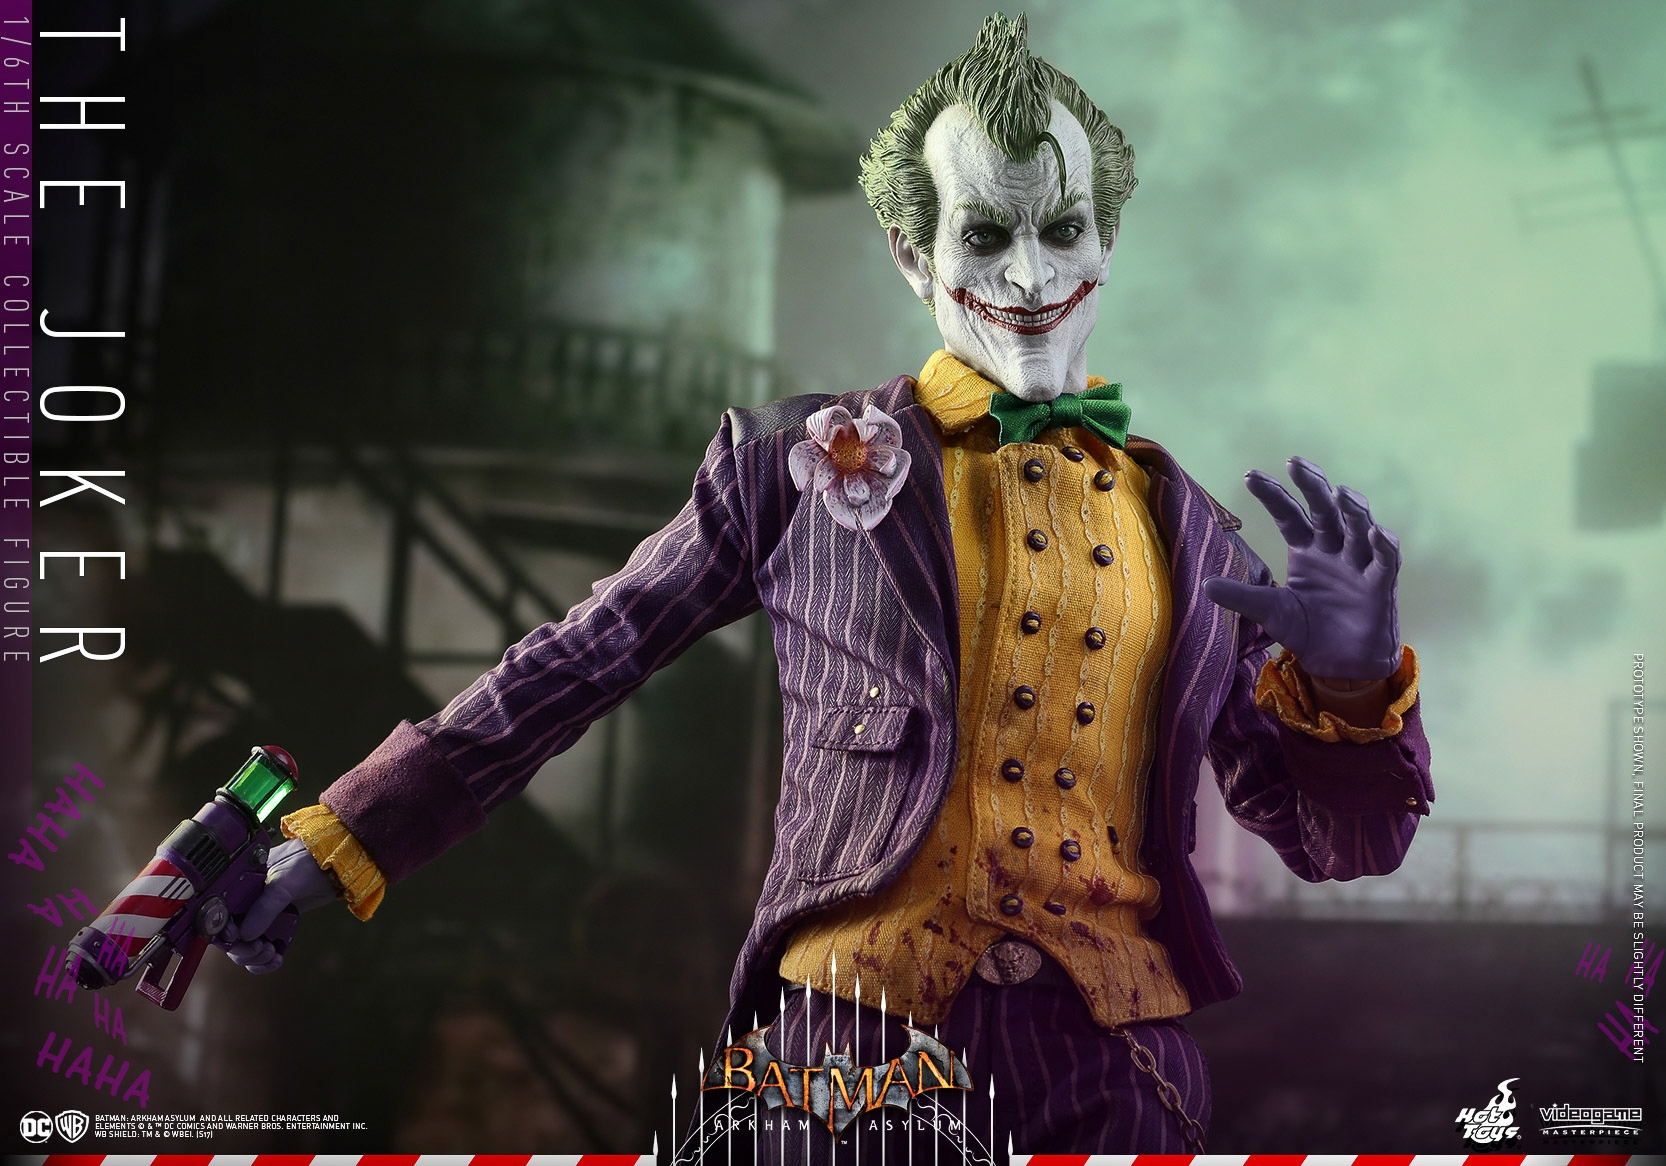 Hot-Toys-Batman-Arkham-Asylum-Joker-Collectible-Figure-009.jpg